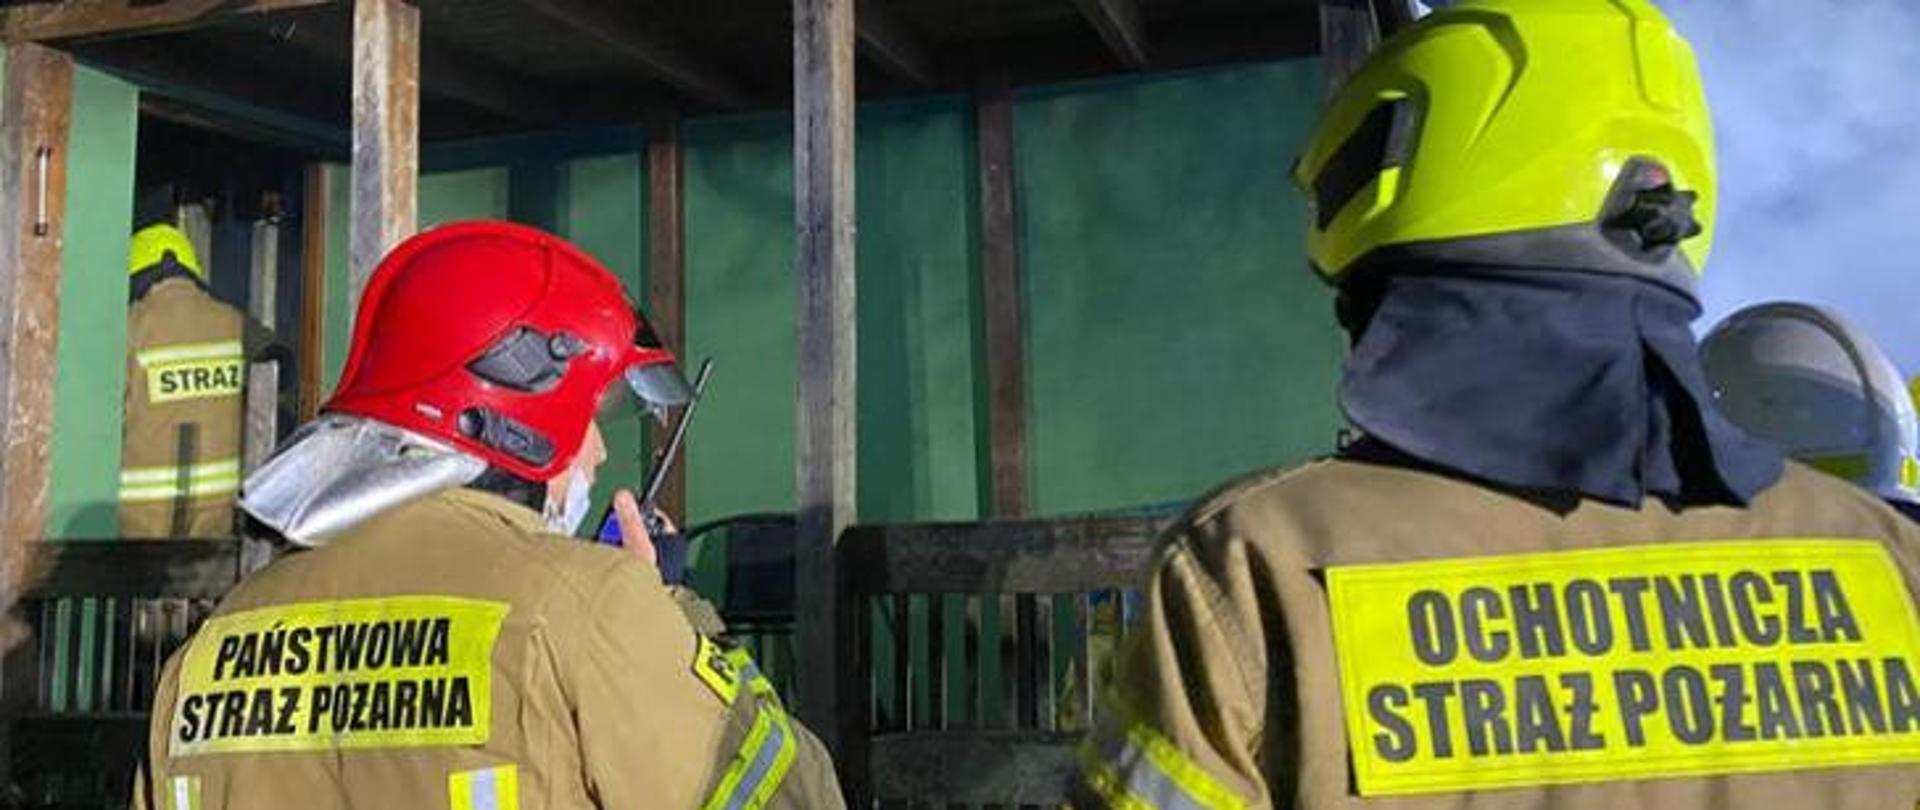 Zdjęcie przedstawia funkcjonariusza Państwowej Straży Pożarnej oraz druha Ochotniczej Straży Pożarnej podczas działań.
Zdjęcie symbolizuje współpracę operacyjną.